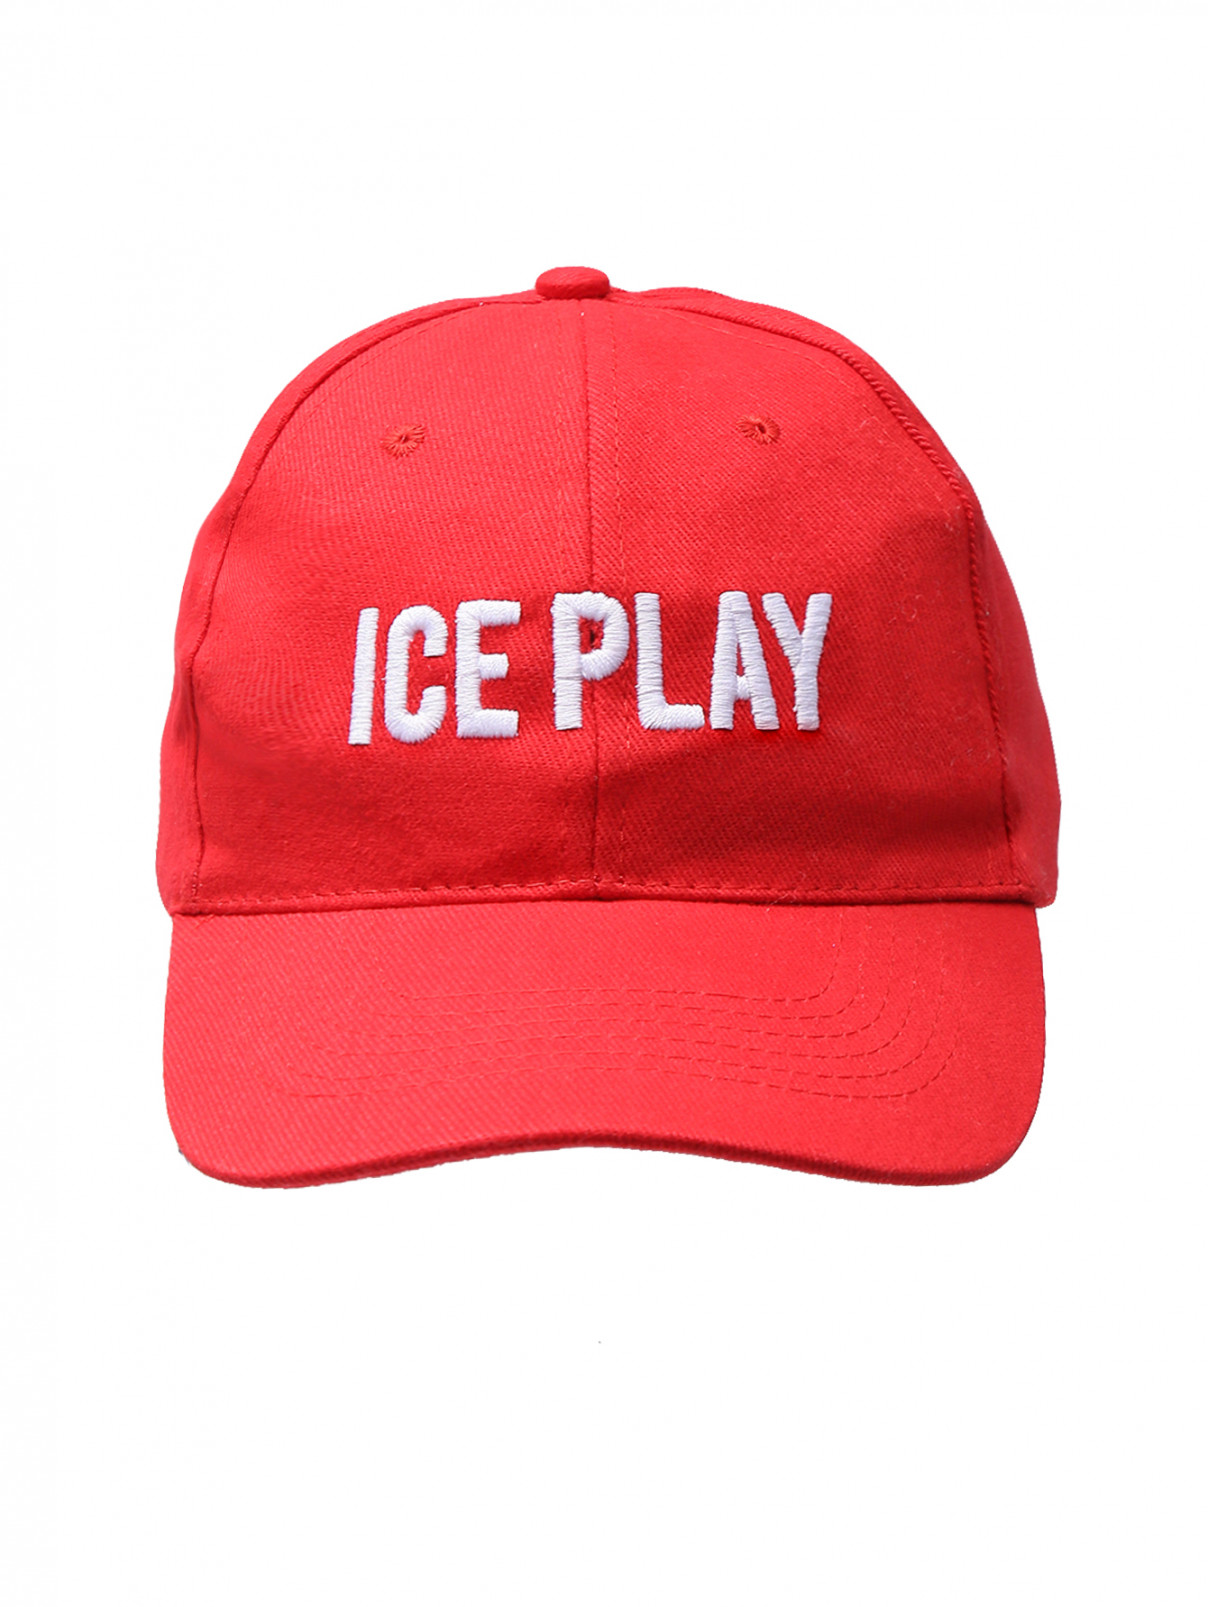 Бейсболка с вышивкой Ice Play  –  Общий вид  – Цвет:  Красный